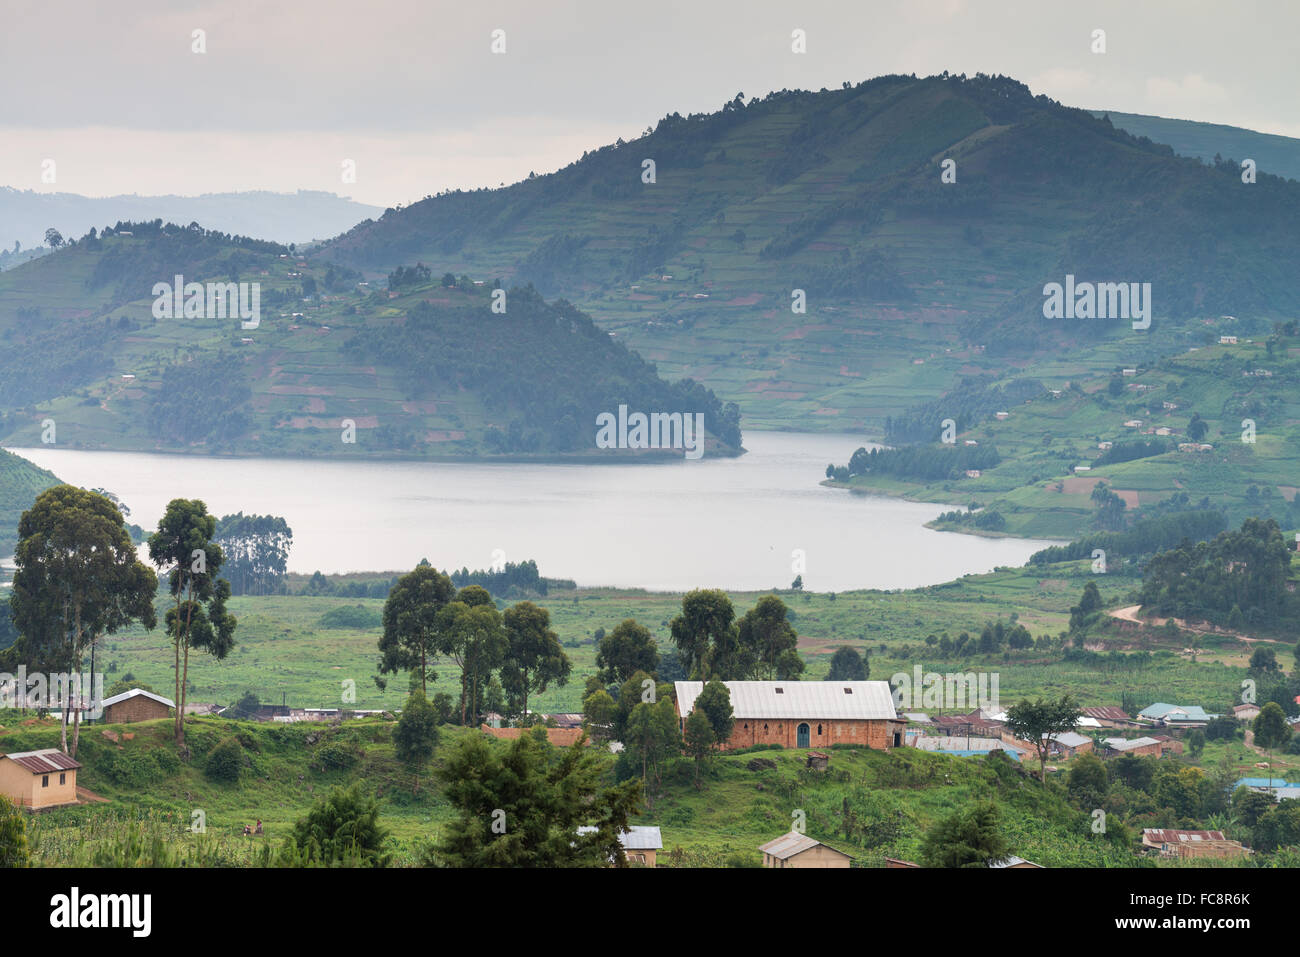 Lake Bunyonyi Landscape, Uganda, Africa Stock Photo